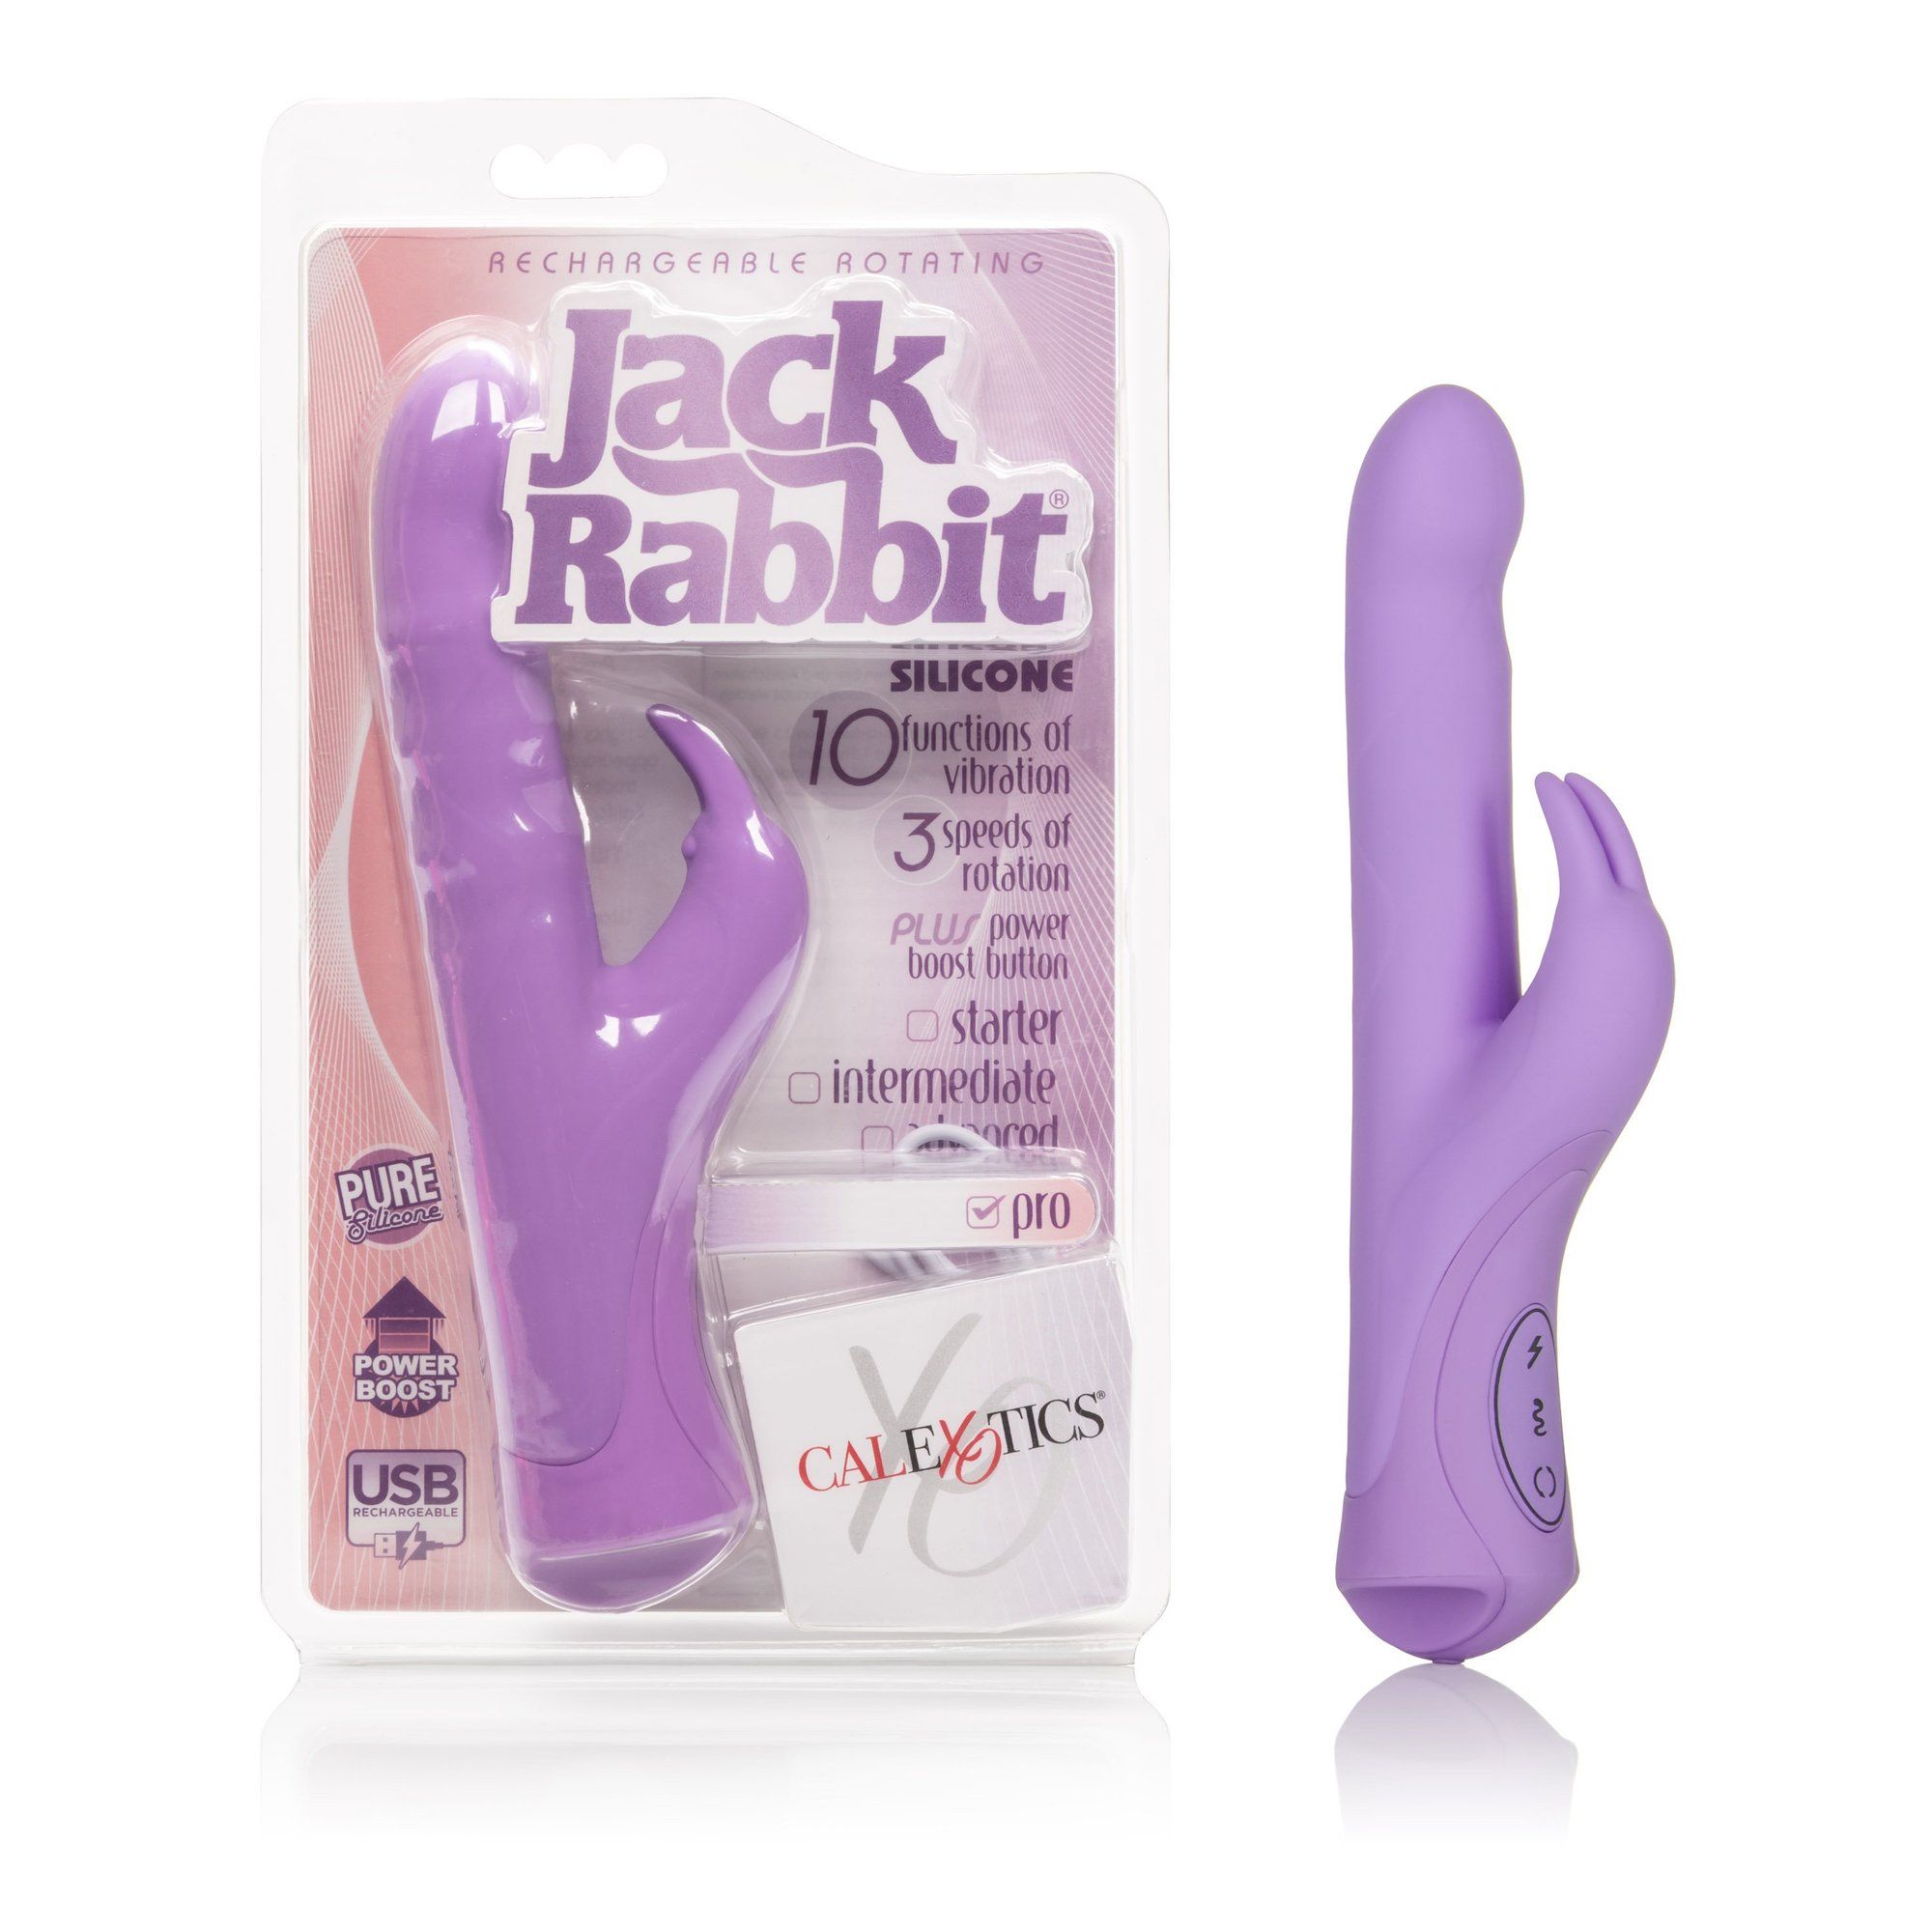 Purple rabbit jack vibrator pic image